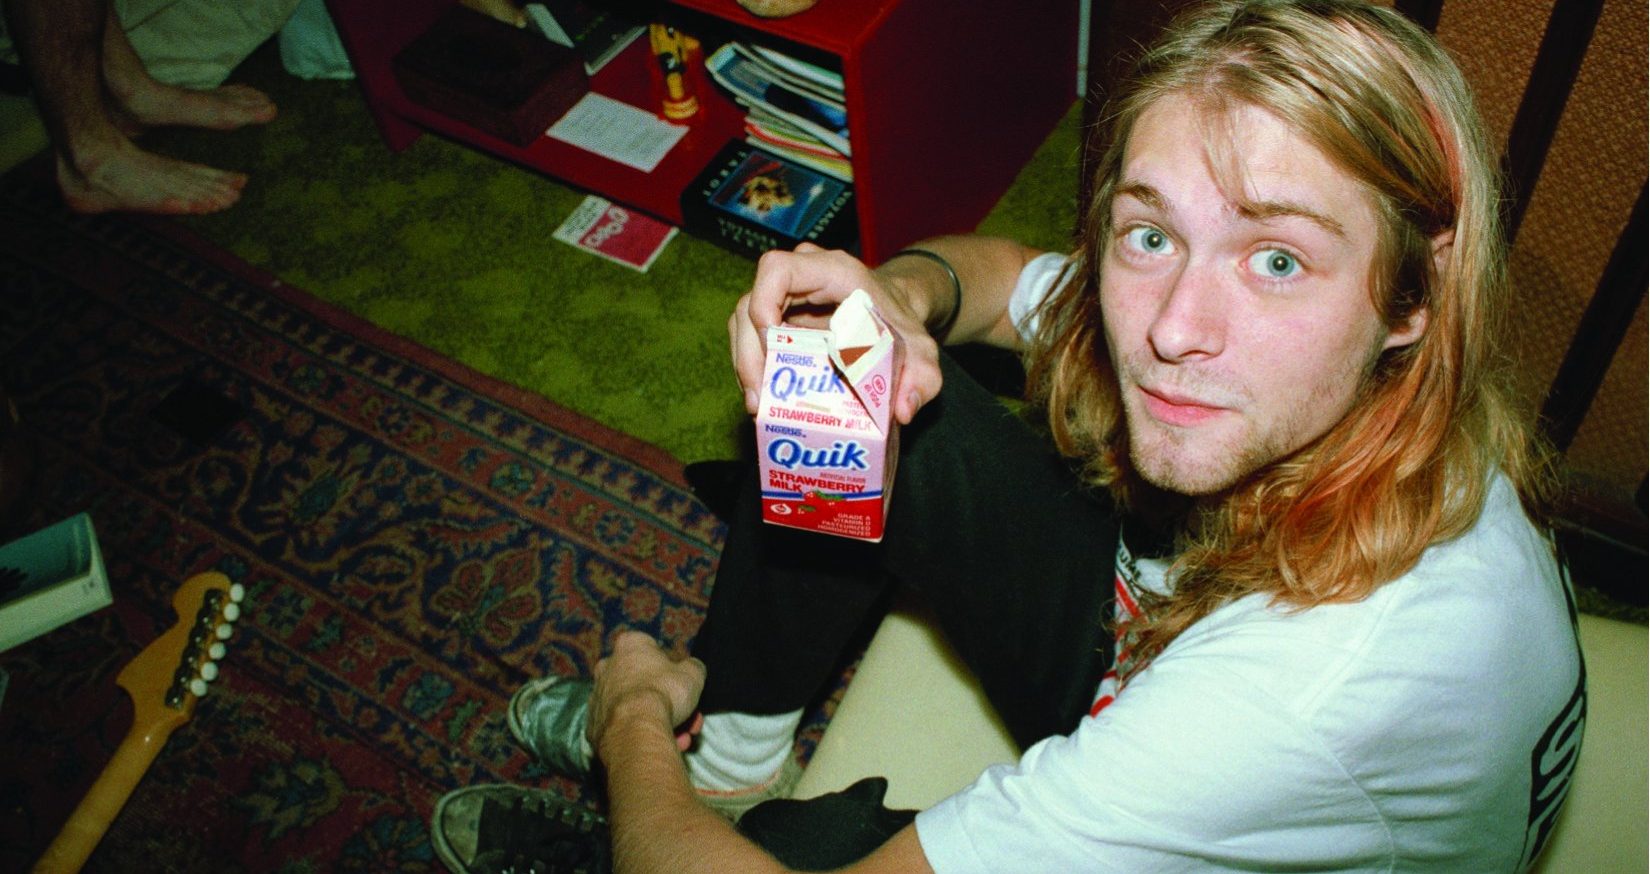 “Recuerdo la brillantez, su sentido del humor y la amabilidad”: se viene el libro sobre Kurt Cobain escrito por el manager que lo acompañó durante 4 años